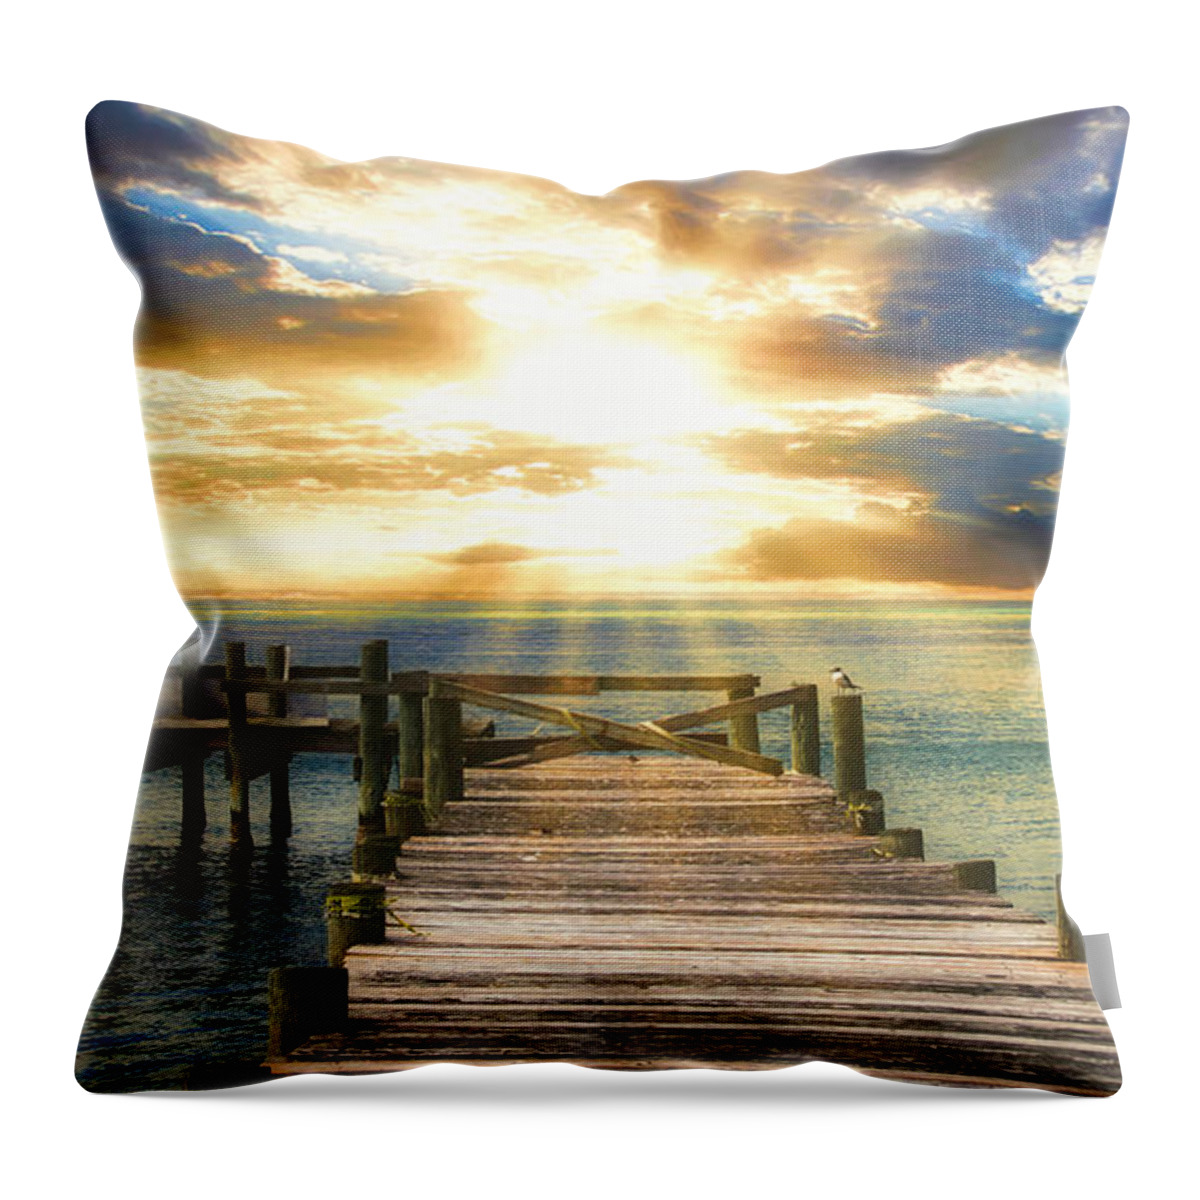 Sunset Pier Throw Pillow featuring the photograph Sunset Pier by Mel Steinhauer